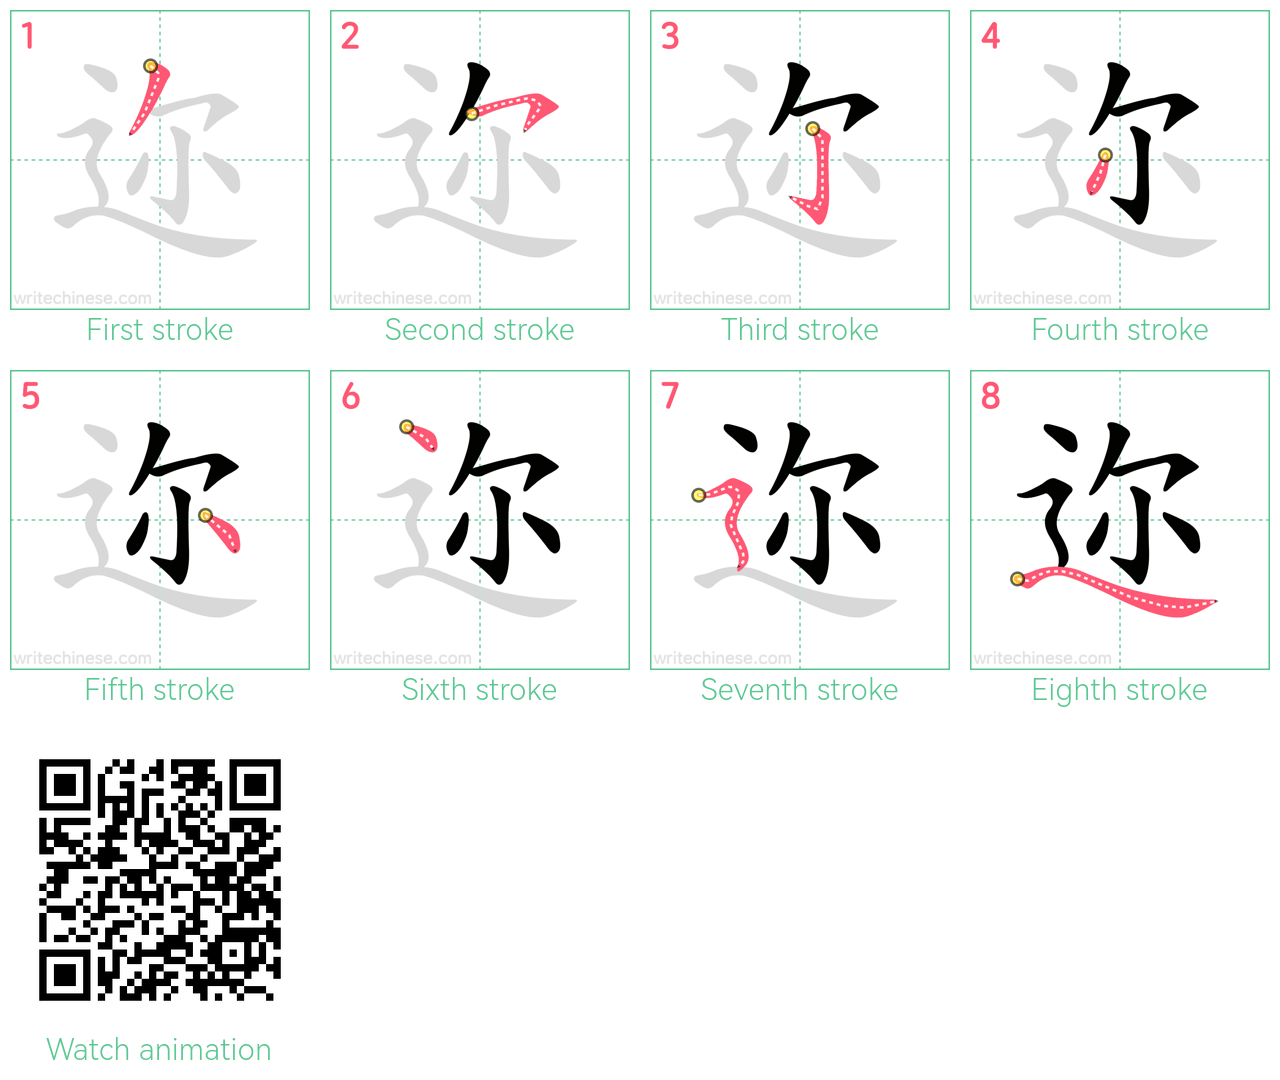 迩 step-by-step stroke order diagrams